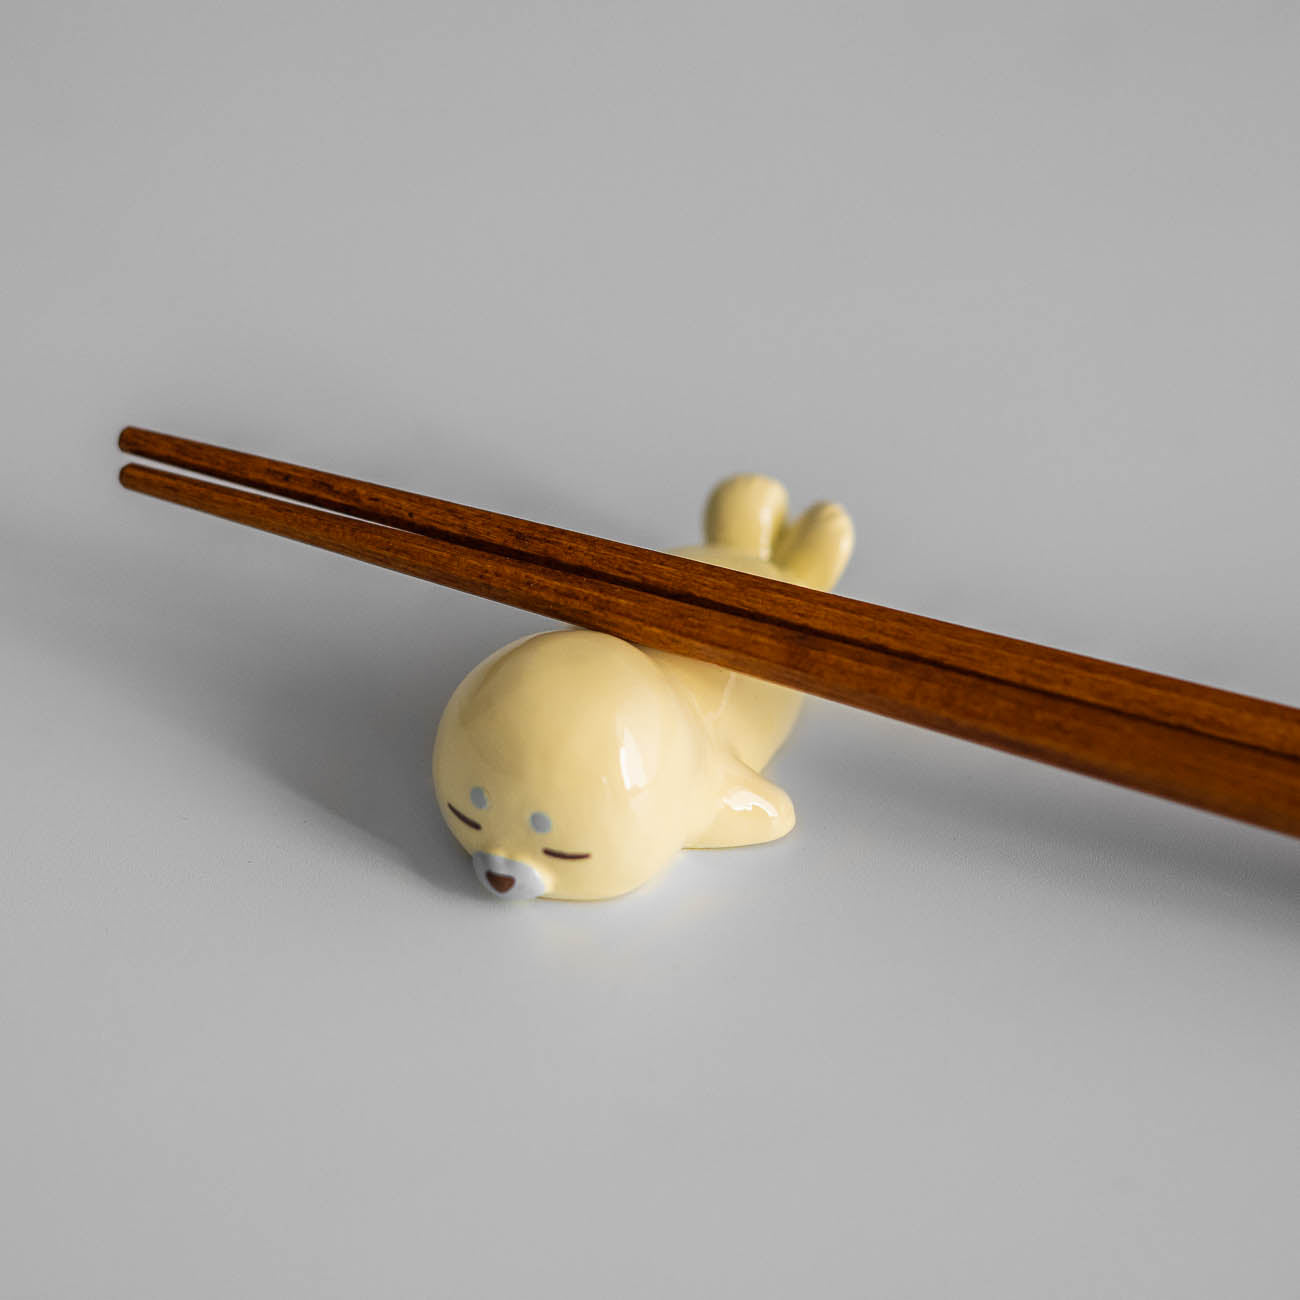 Chopstick Rest - Seal